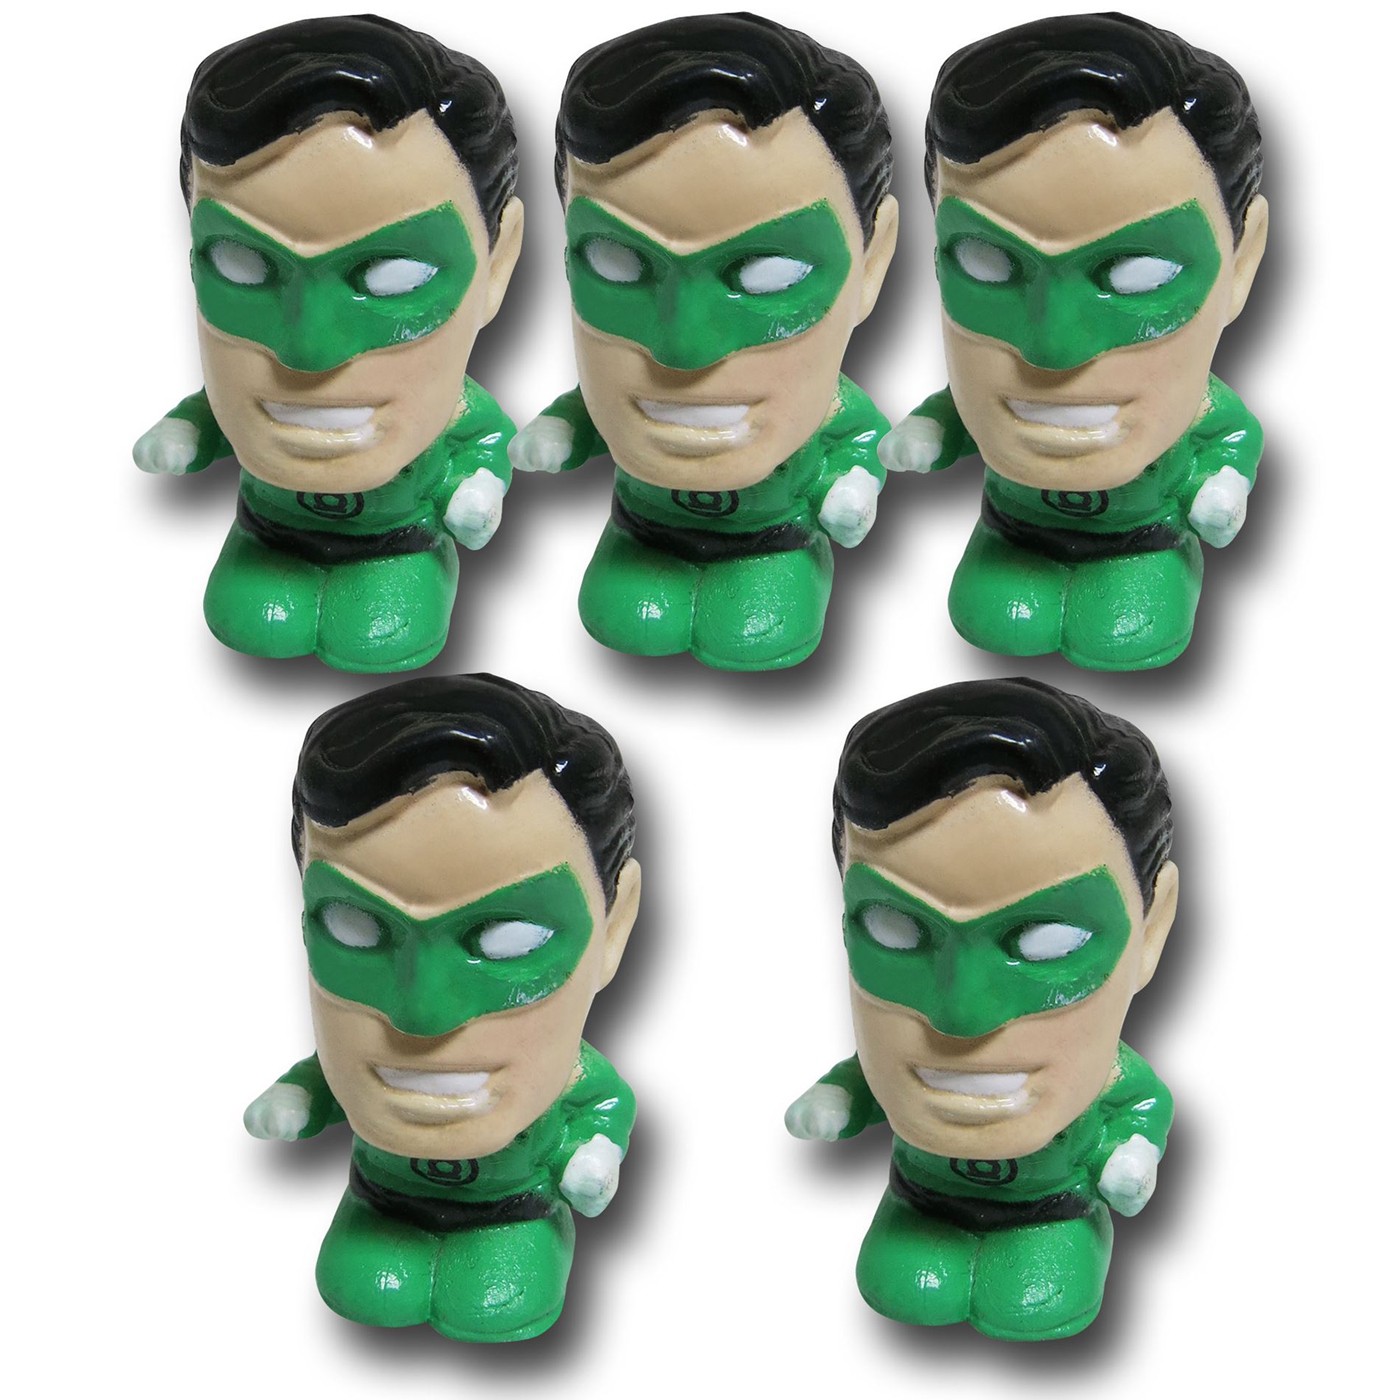 Green Lantern Deformed Pencil Eraser Topper 5 Pack